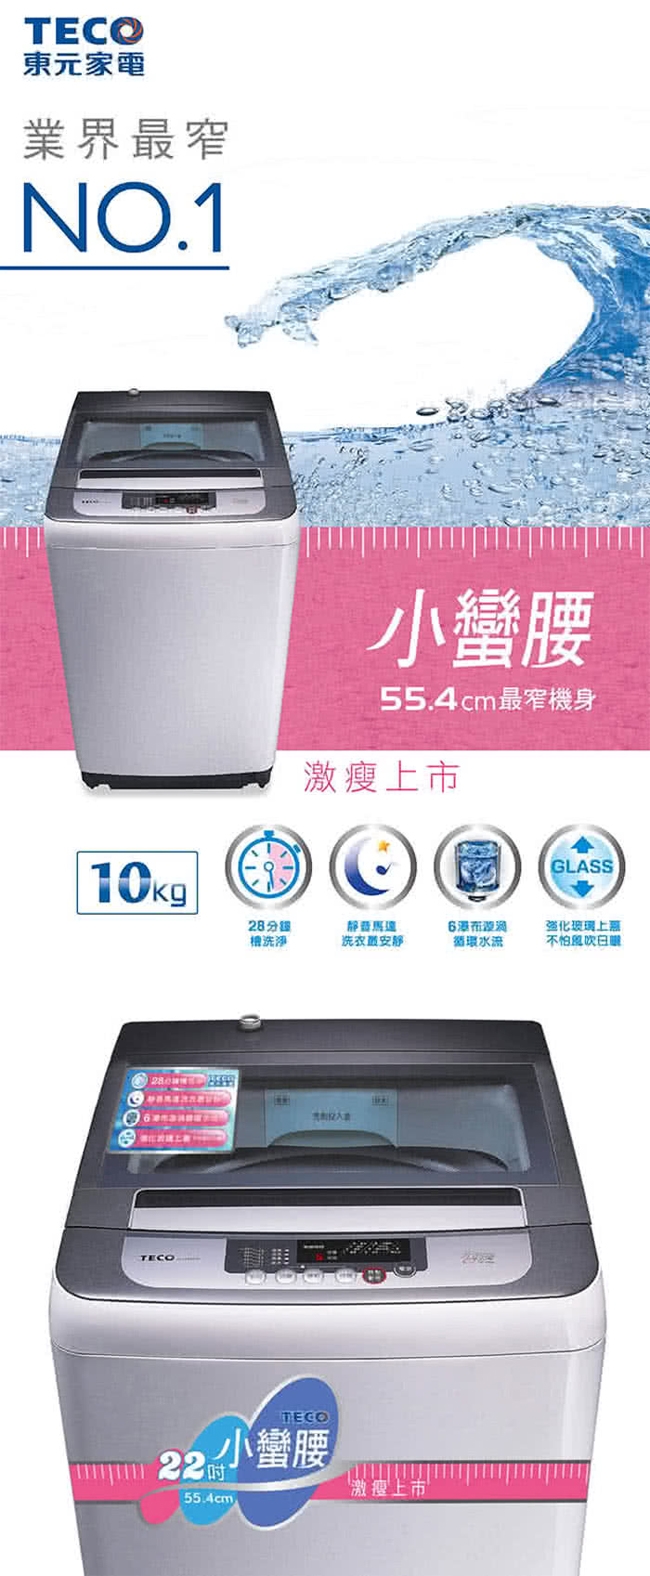 TECO東元 10KG 定頻直立式洗衣機 W1038FW 小蠻腰